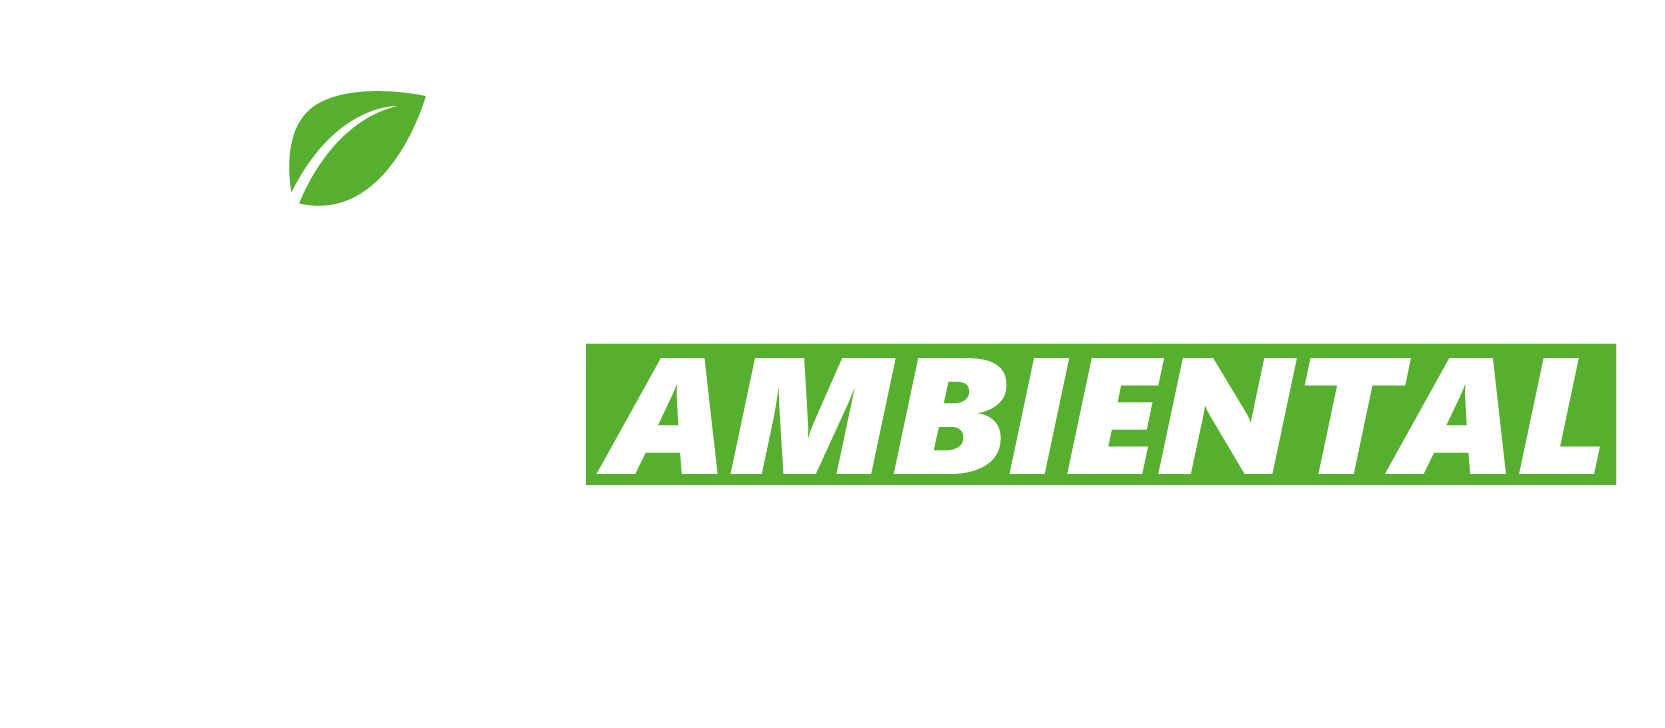 Democracia Ambiental Activa